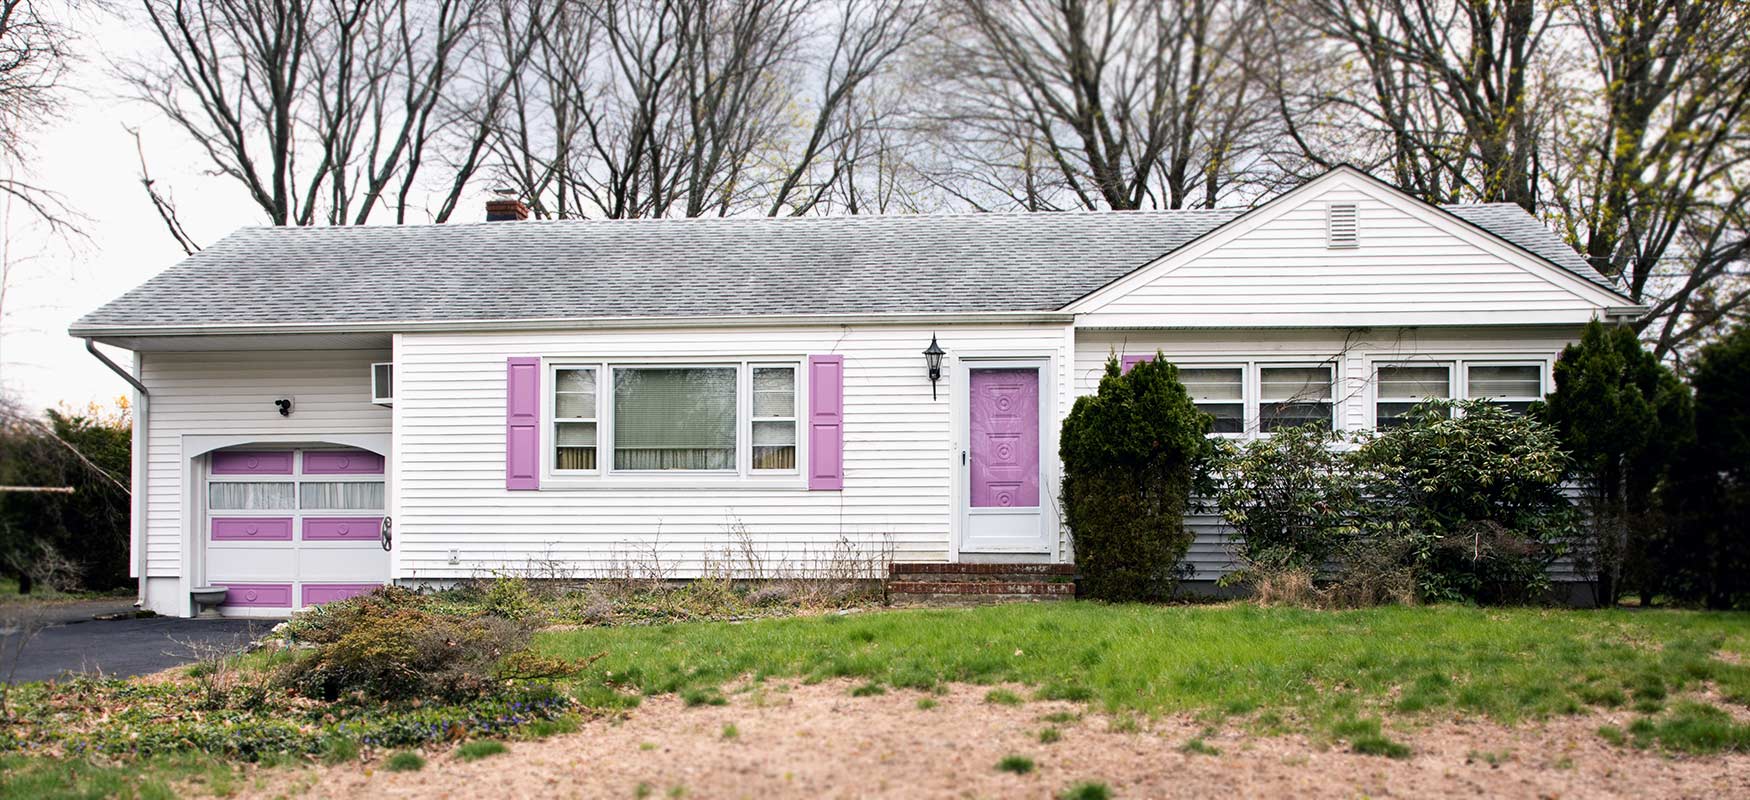 House With Purple Door